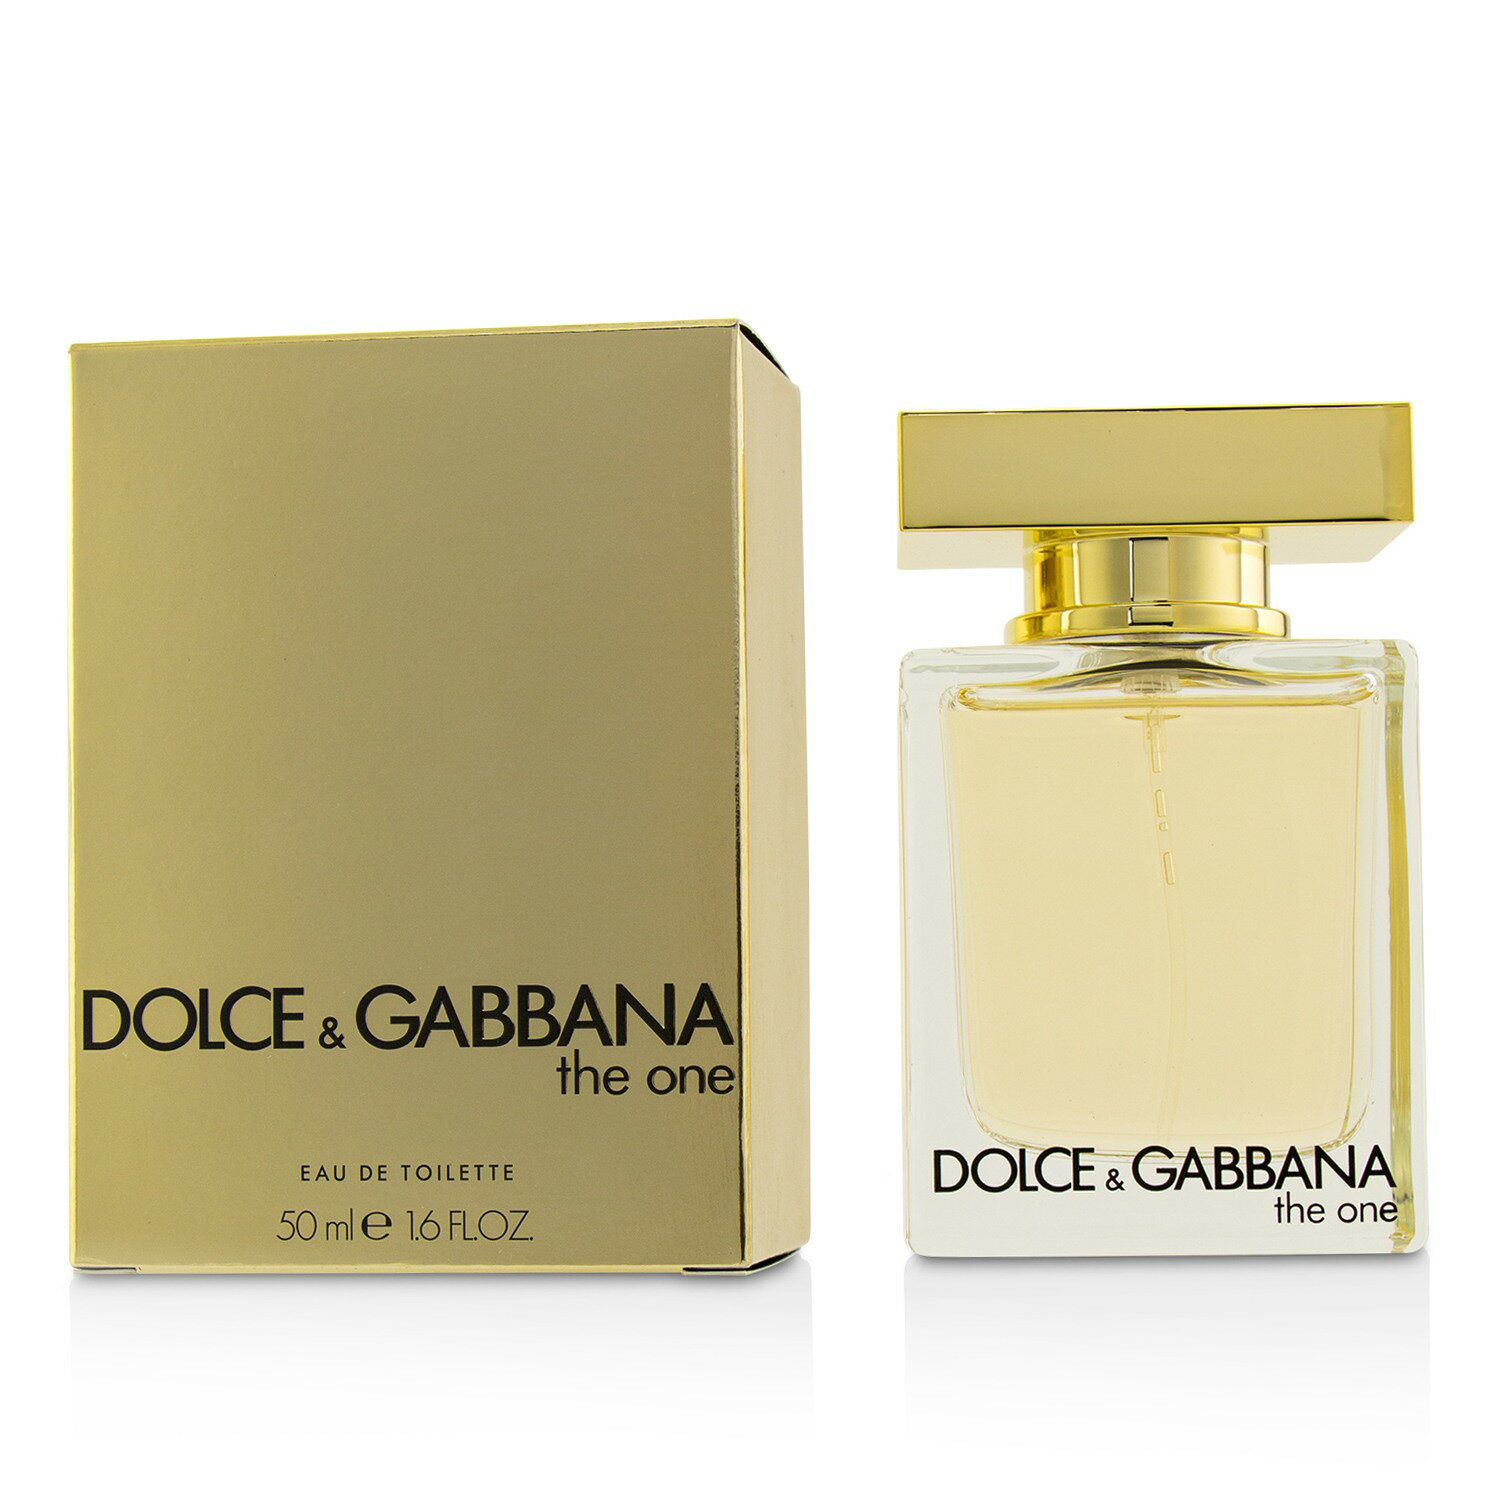 Духи дольче габбана devotion. Dolce Gabbana the one Eau de Toilette. Dolce Gabbana the one 50ml. Dolce & Gabbana the one for women EDP 50 ml. Dolce & Gabbana the one Gold Eau de parfume.